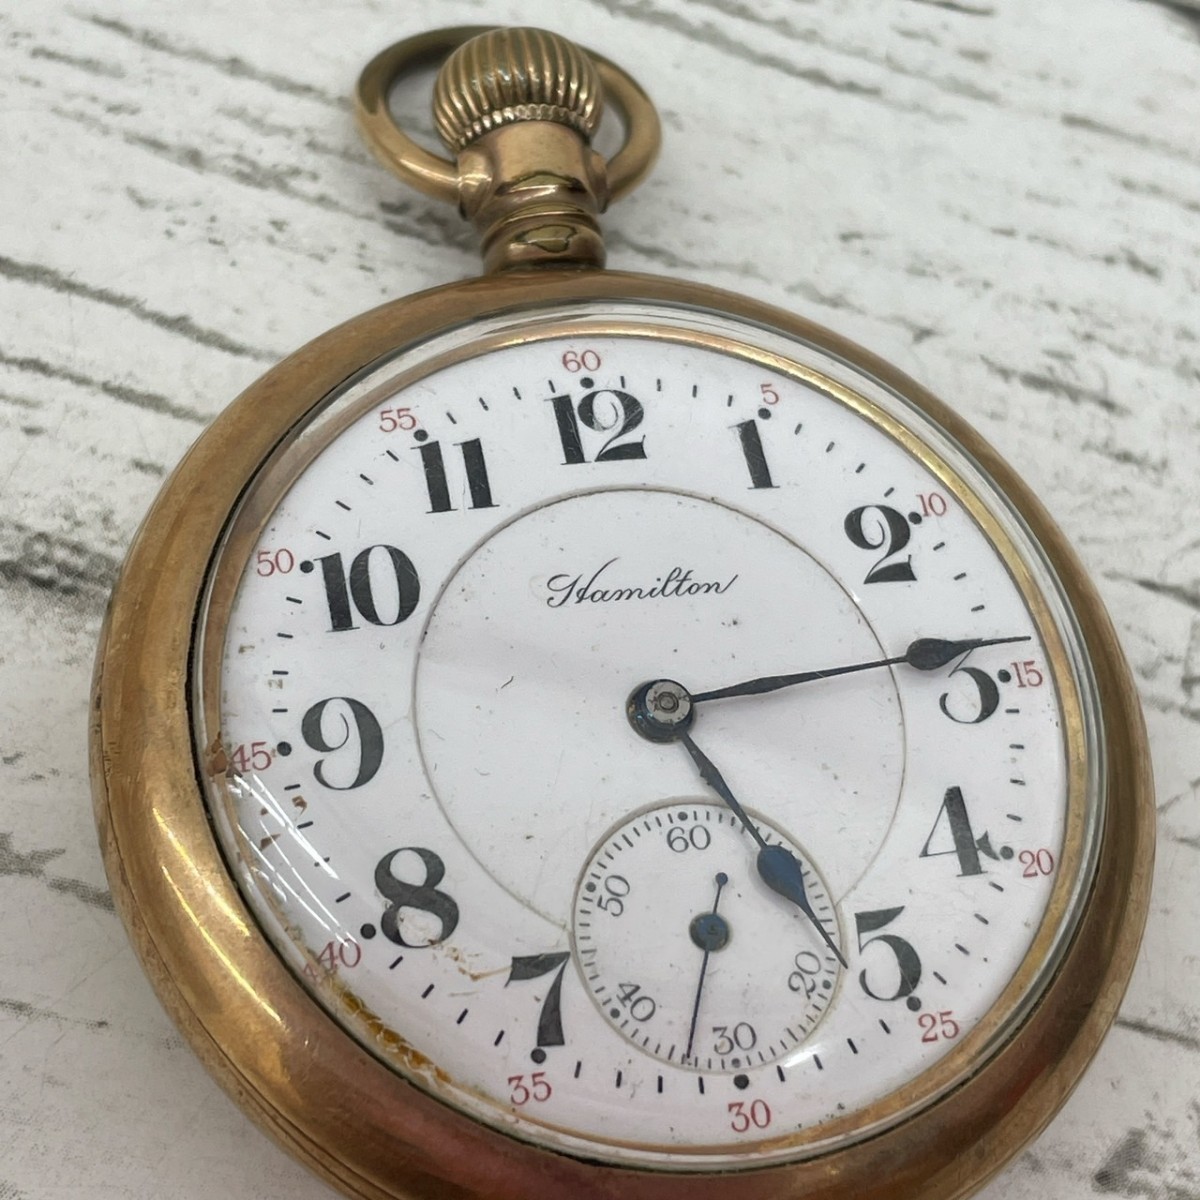  Hamilton карманные часы очень редкий 1900 годы Gold цвет античный механический завод циферблат белый работа товар часы карман часы [3015]